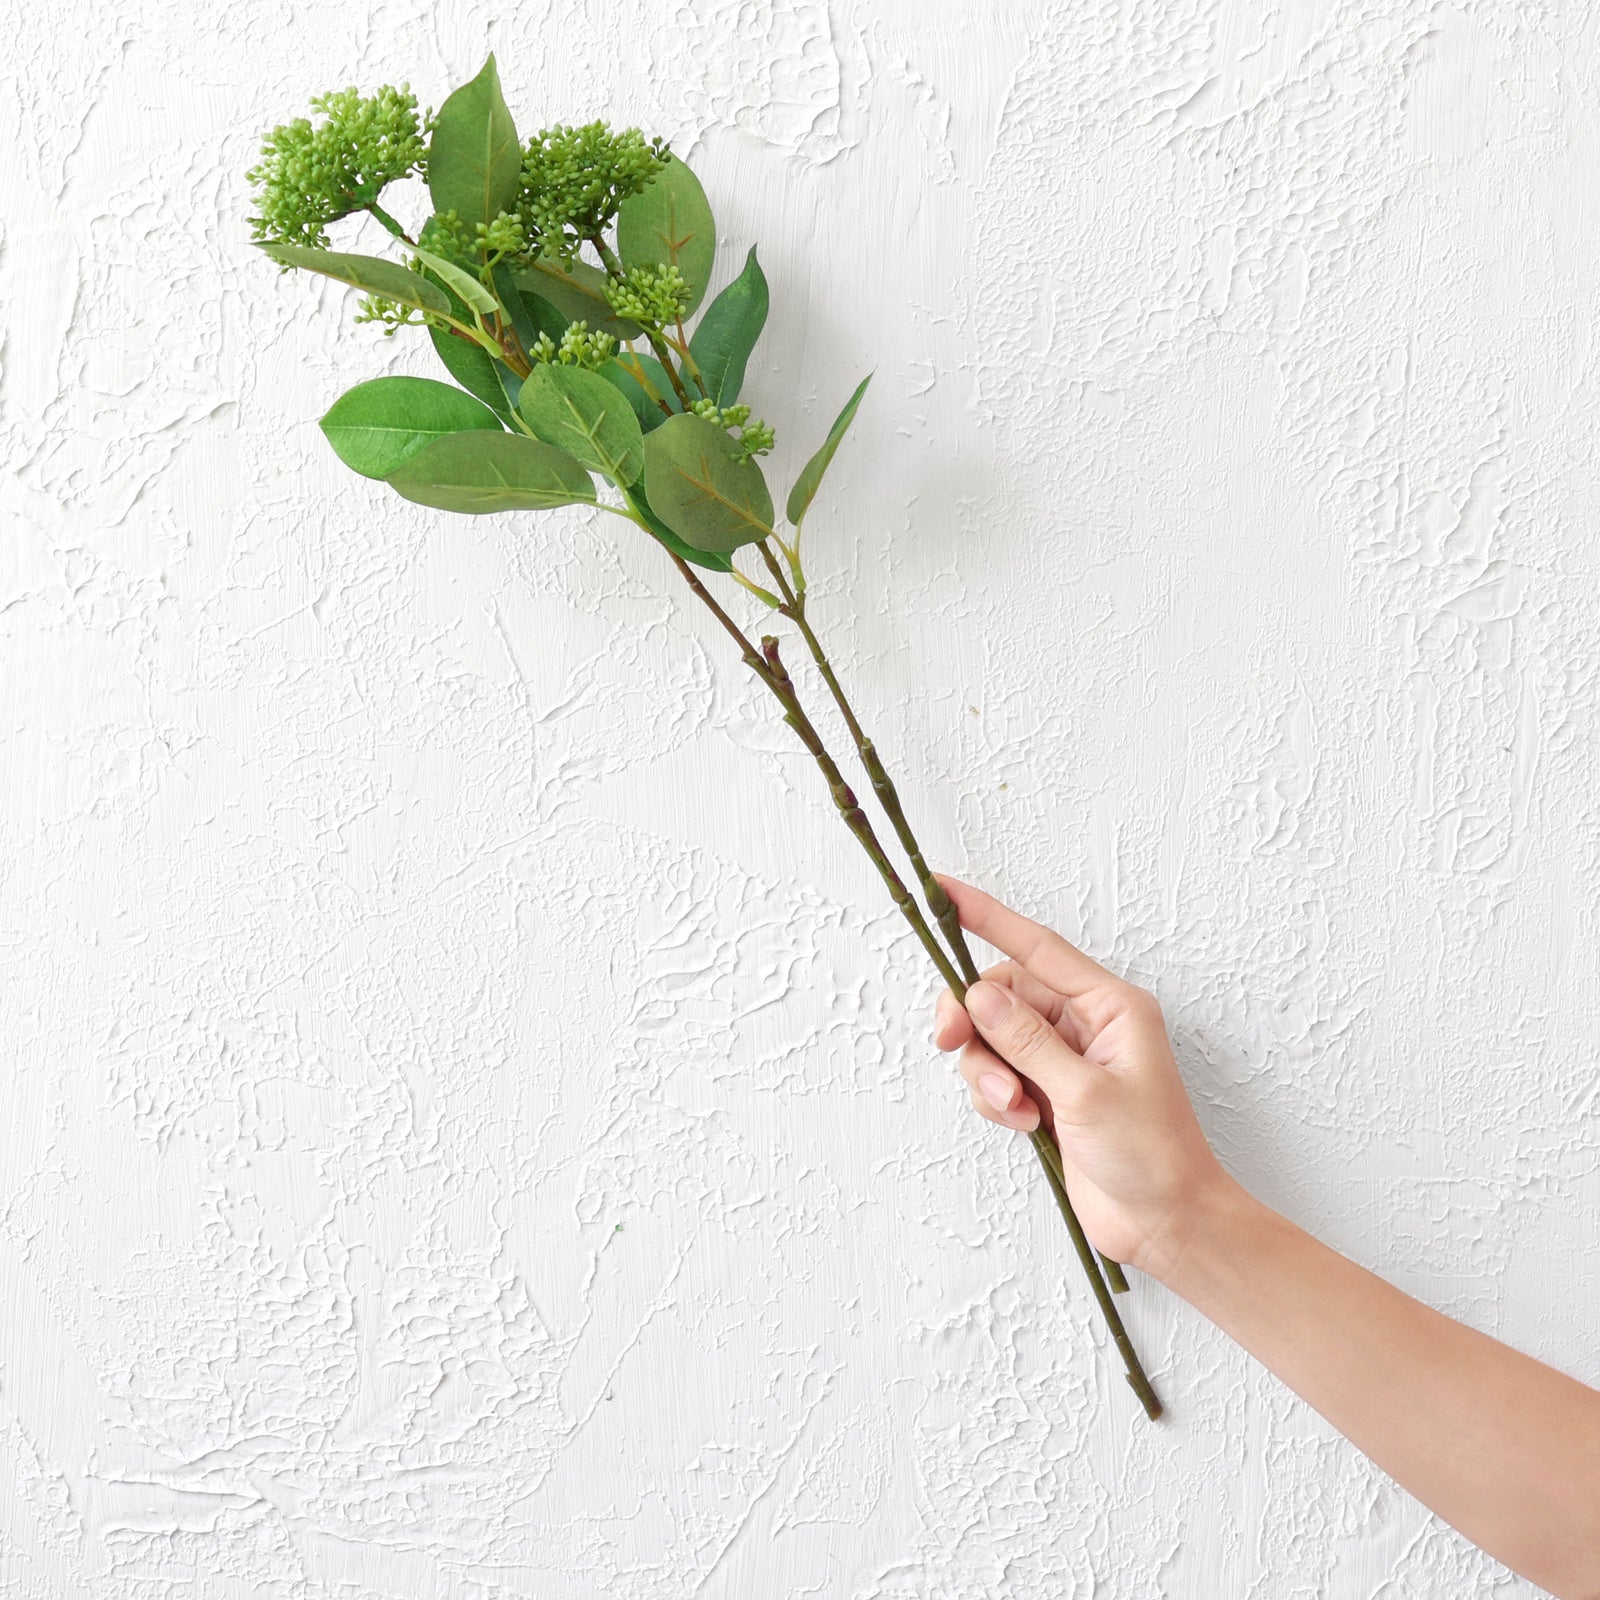 Viburnum (Neural Green) Long Stem Artificial Silk Flowers, Filler Flower, Wedding, Home Decor, Arrangment 6 Stems